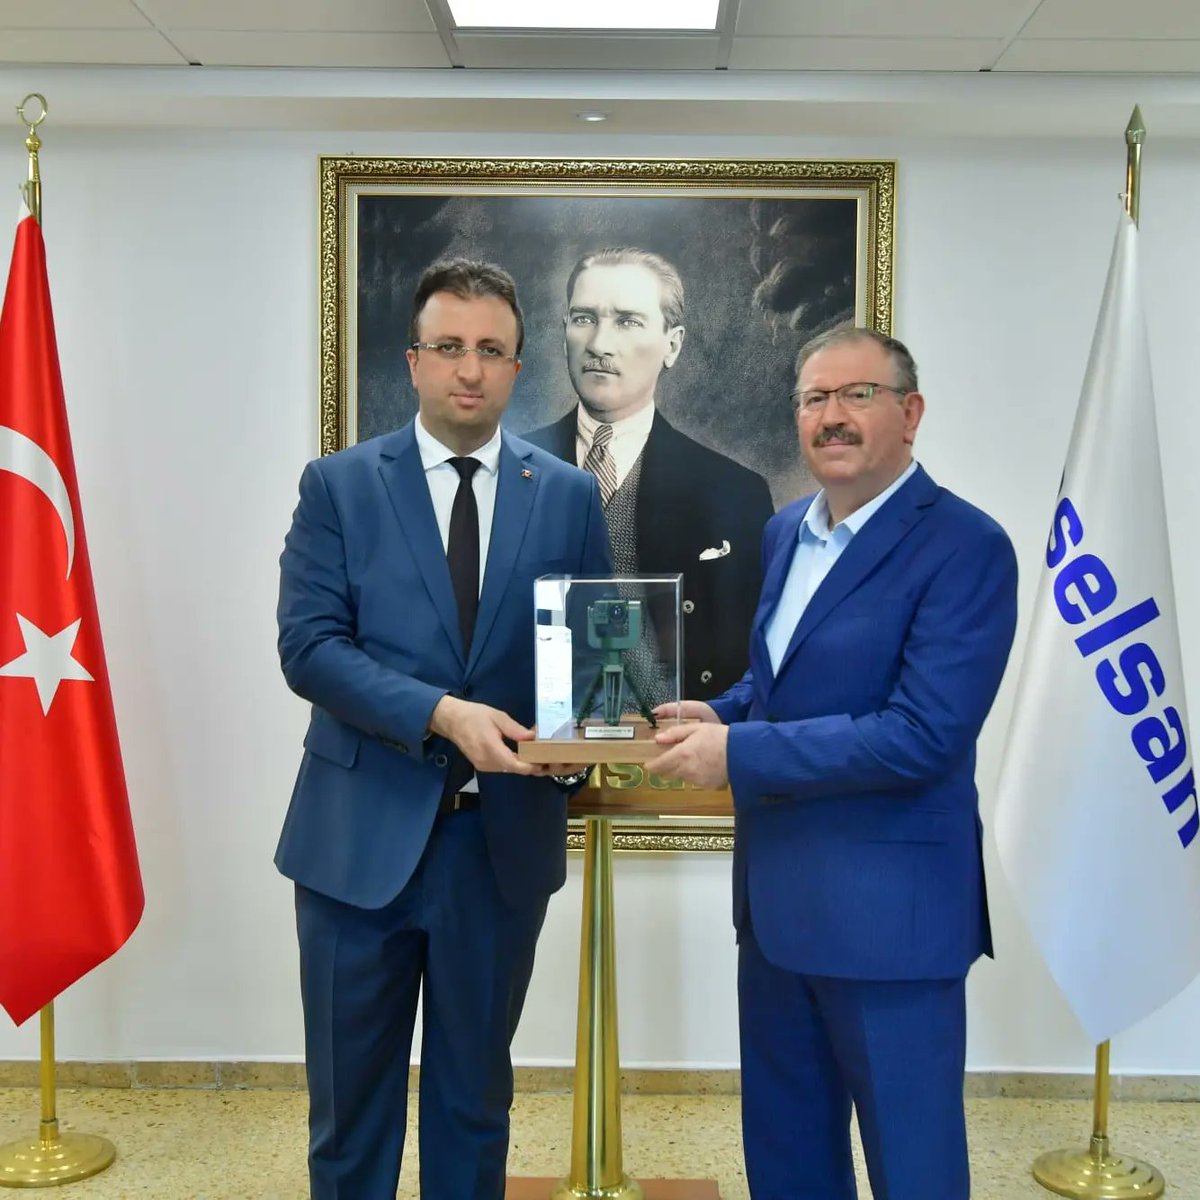 ASELSAN Genel Müdürlüğü'ne atanan Mikroelektronik Güdüm ve Elektro-Optik Sektör Başkanı Sn Ahmet Akyol'a hayırlı olsun ziyaretinde bulunduk. Sn Akyol'a yeni görevinde başarılar diliyorum. Rabbim yar ve yardımcısı olsun.